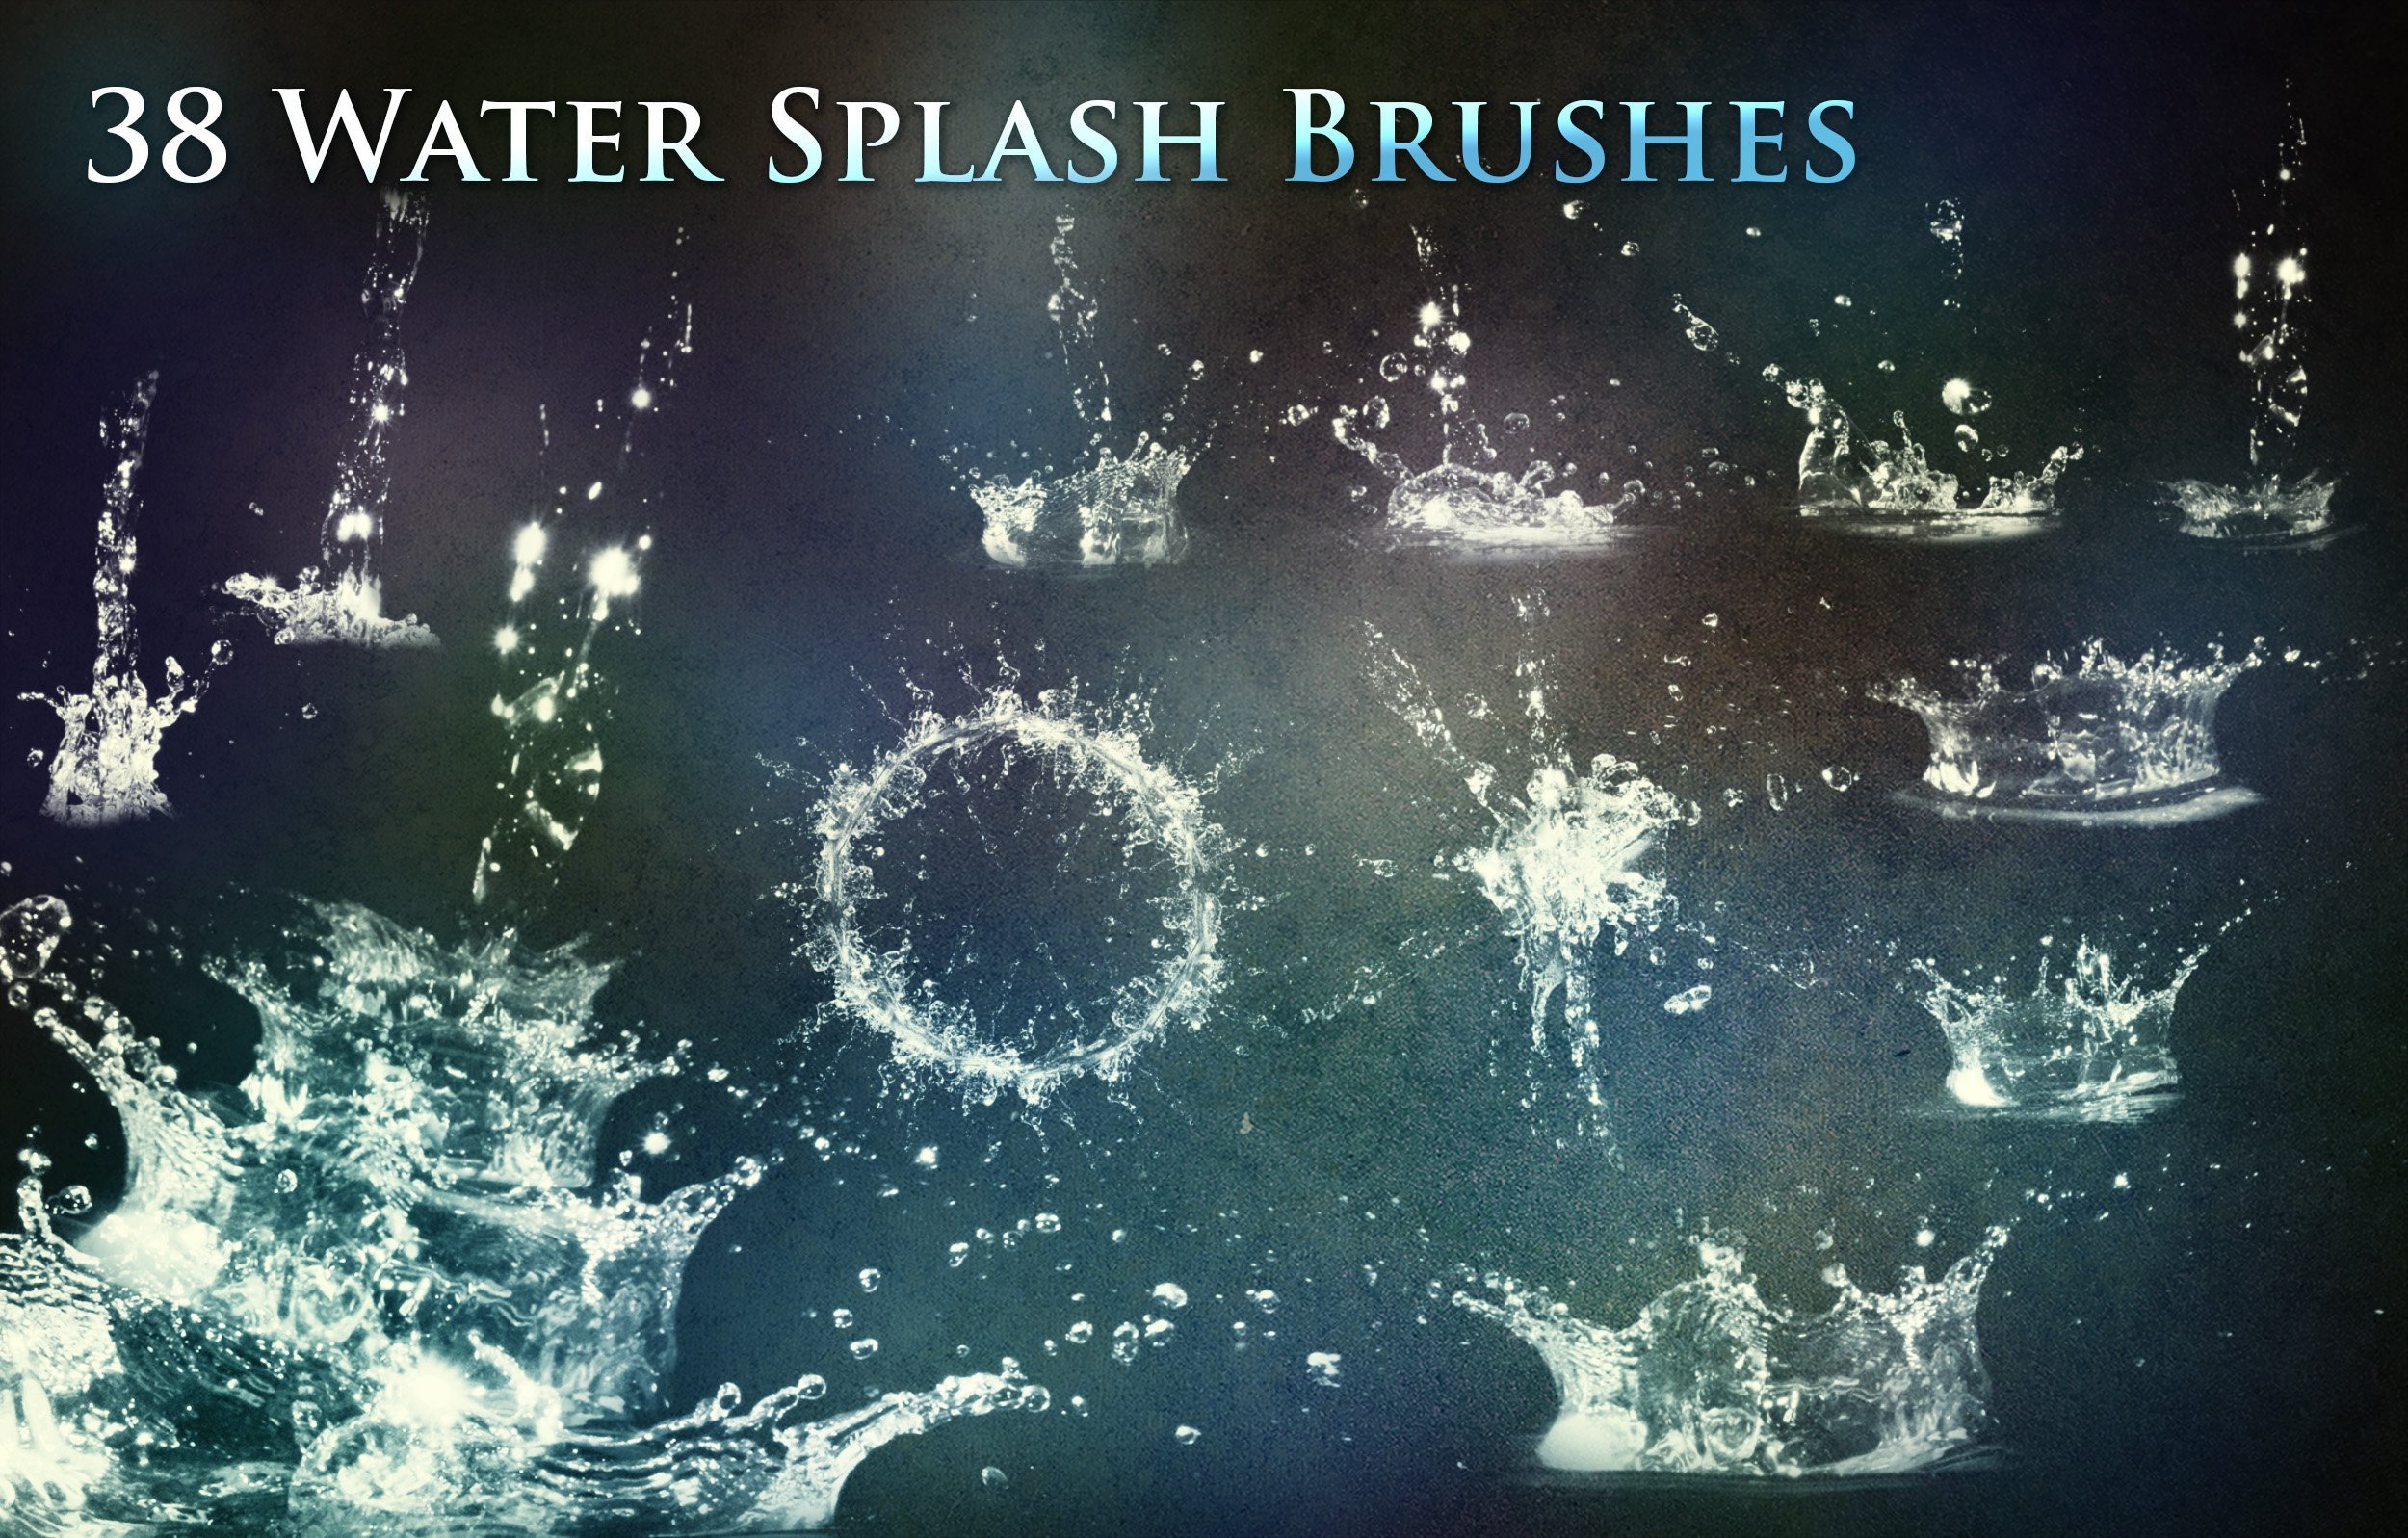 38 Water Splash Brushes shop Add s Creative Market